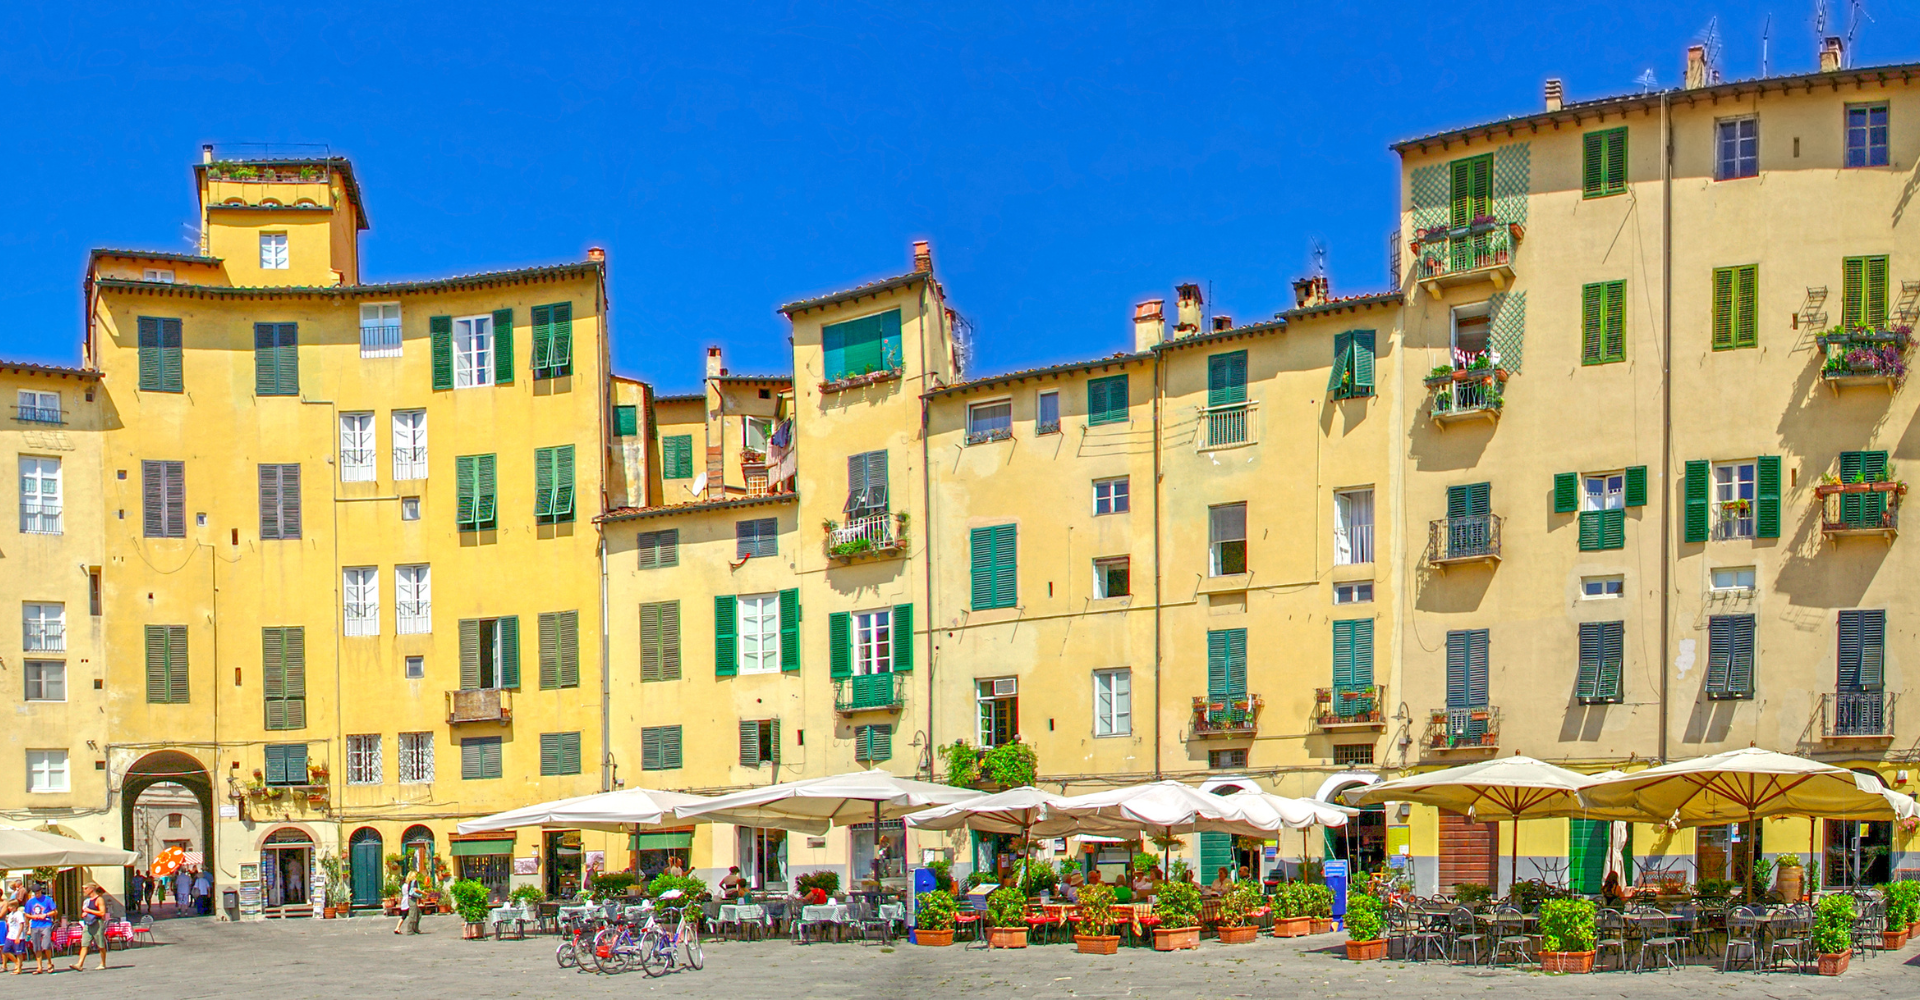 Cinque giorni in sella alla tua bici per scoprire Pisa, Lucca, Vinci e Firenze